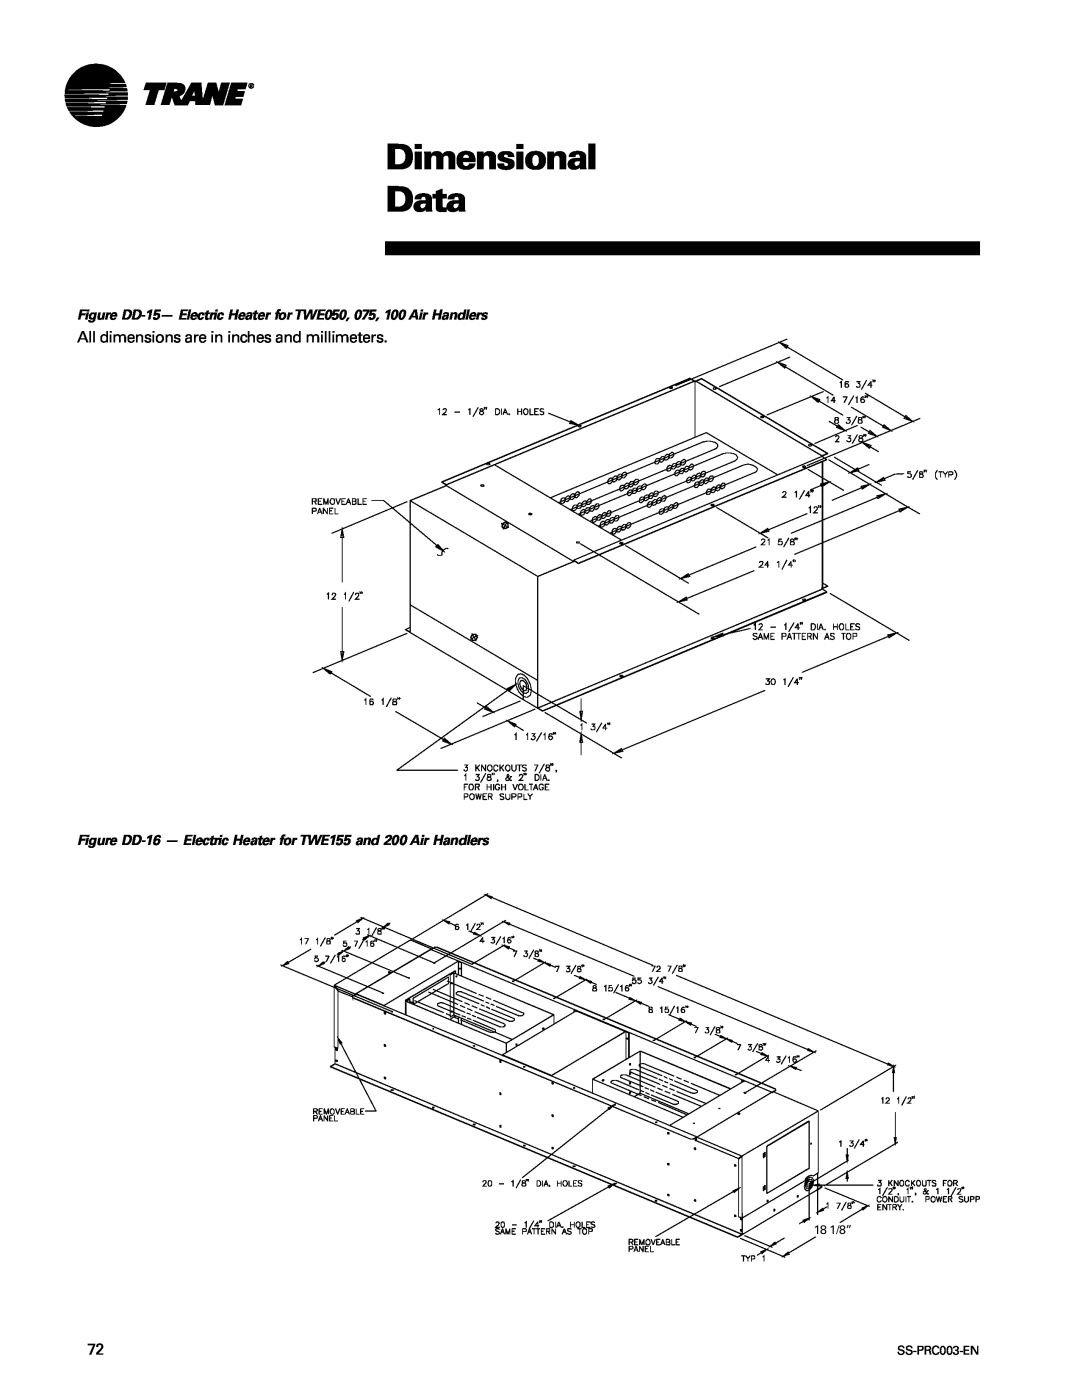 Trane SS-PRC003-EN manual Dimensional Data, 18 1/8” 